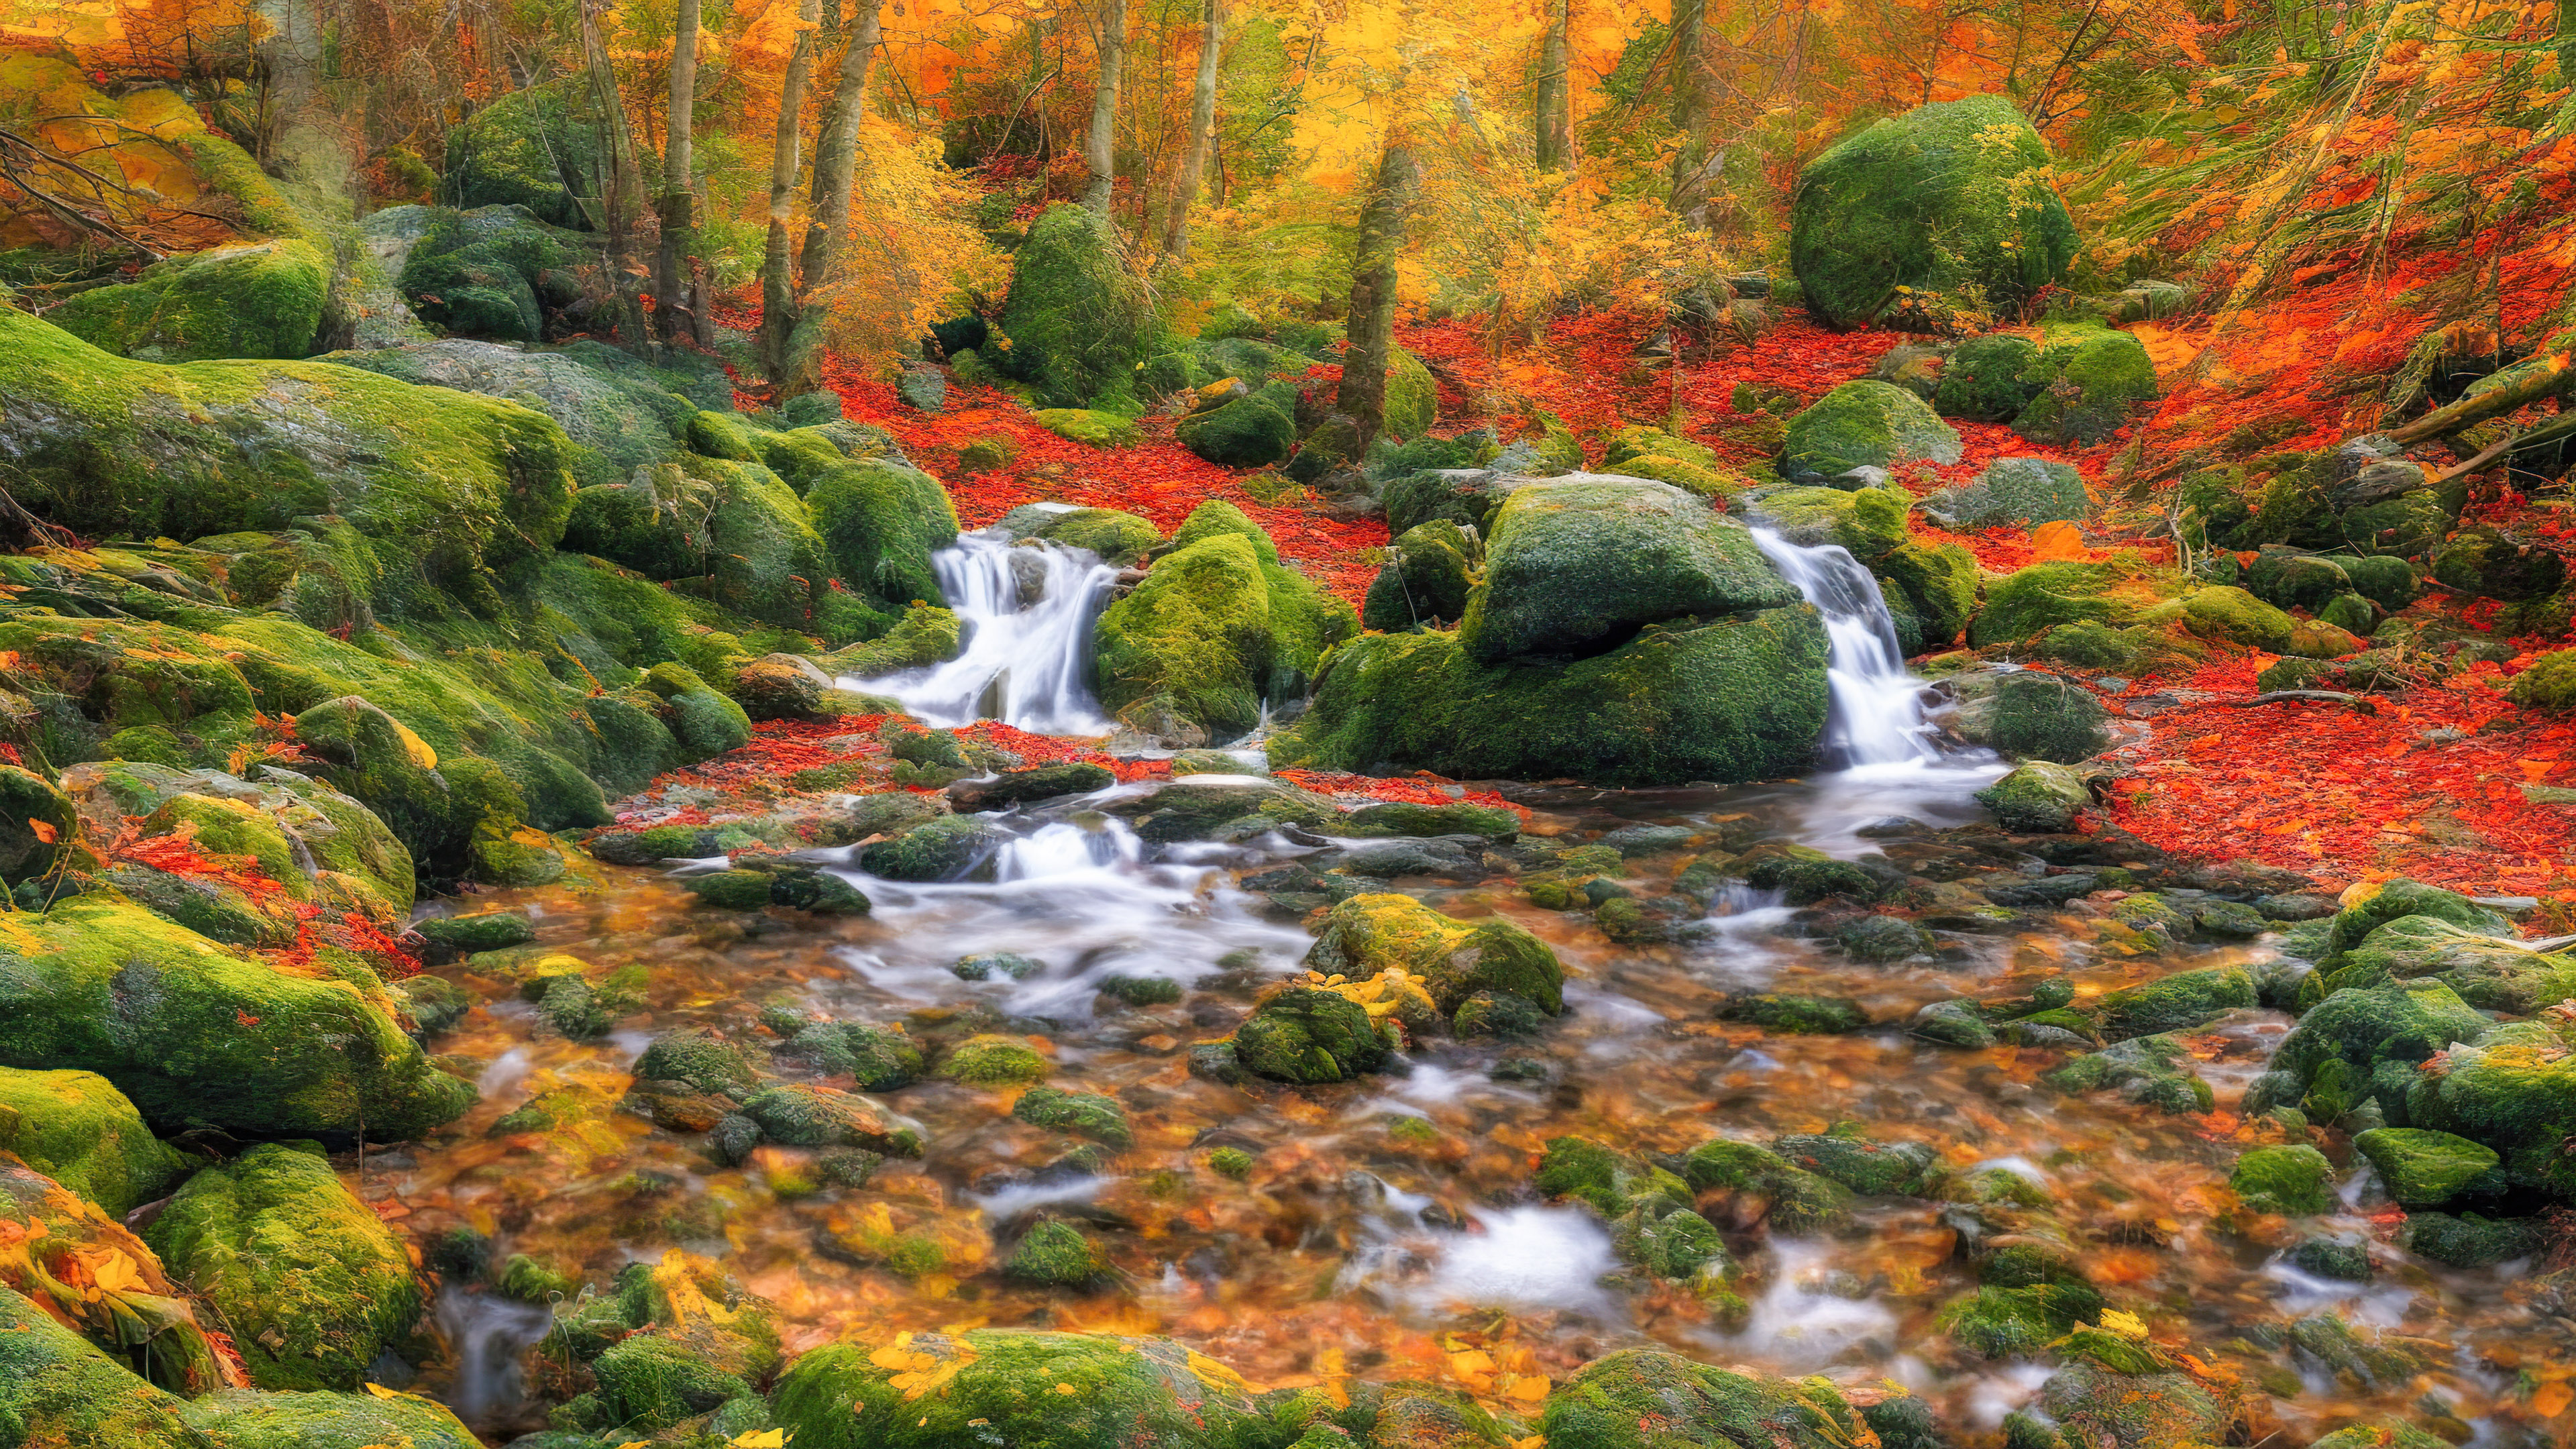 Vivez la tranquillité de notre fond d'écran de paysage pour PC, présentant une scène de forêt tranquille avec un ruisseau sinueux, entouré d'un feuillage d'automne vibrant.